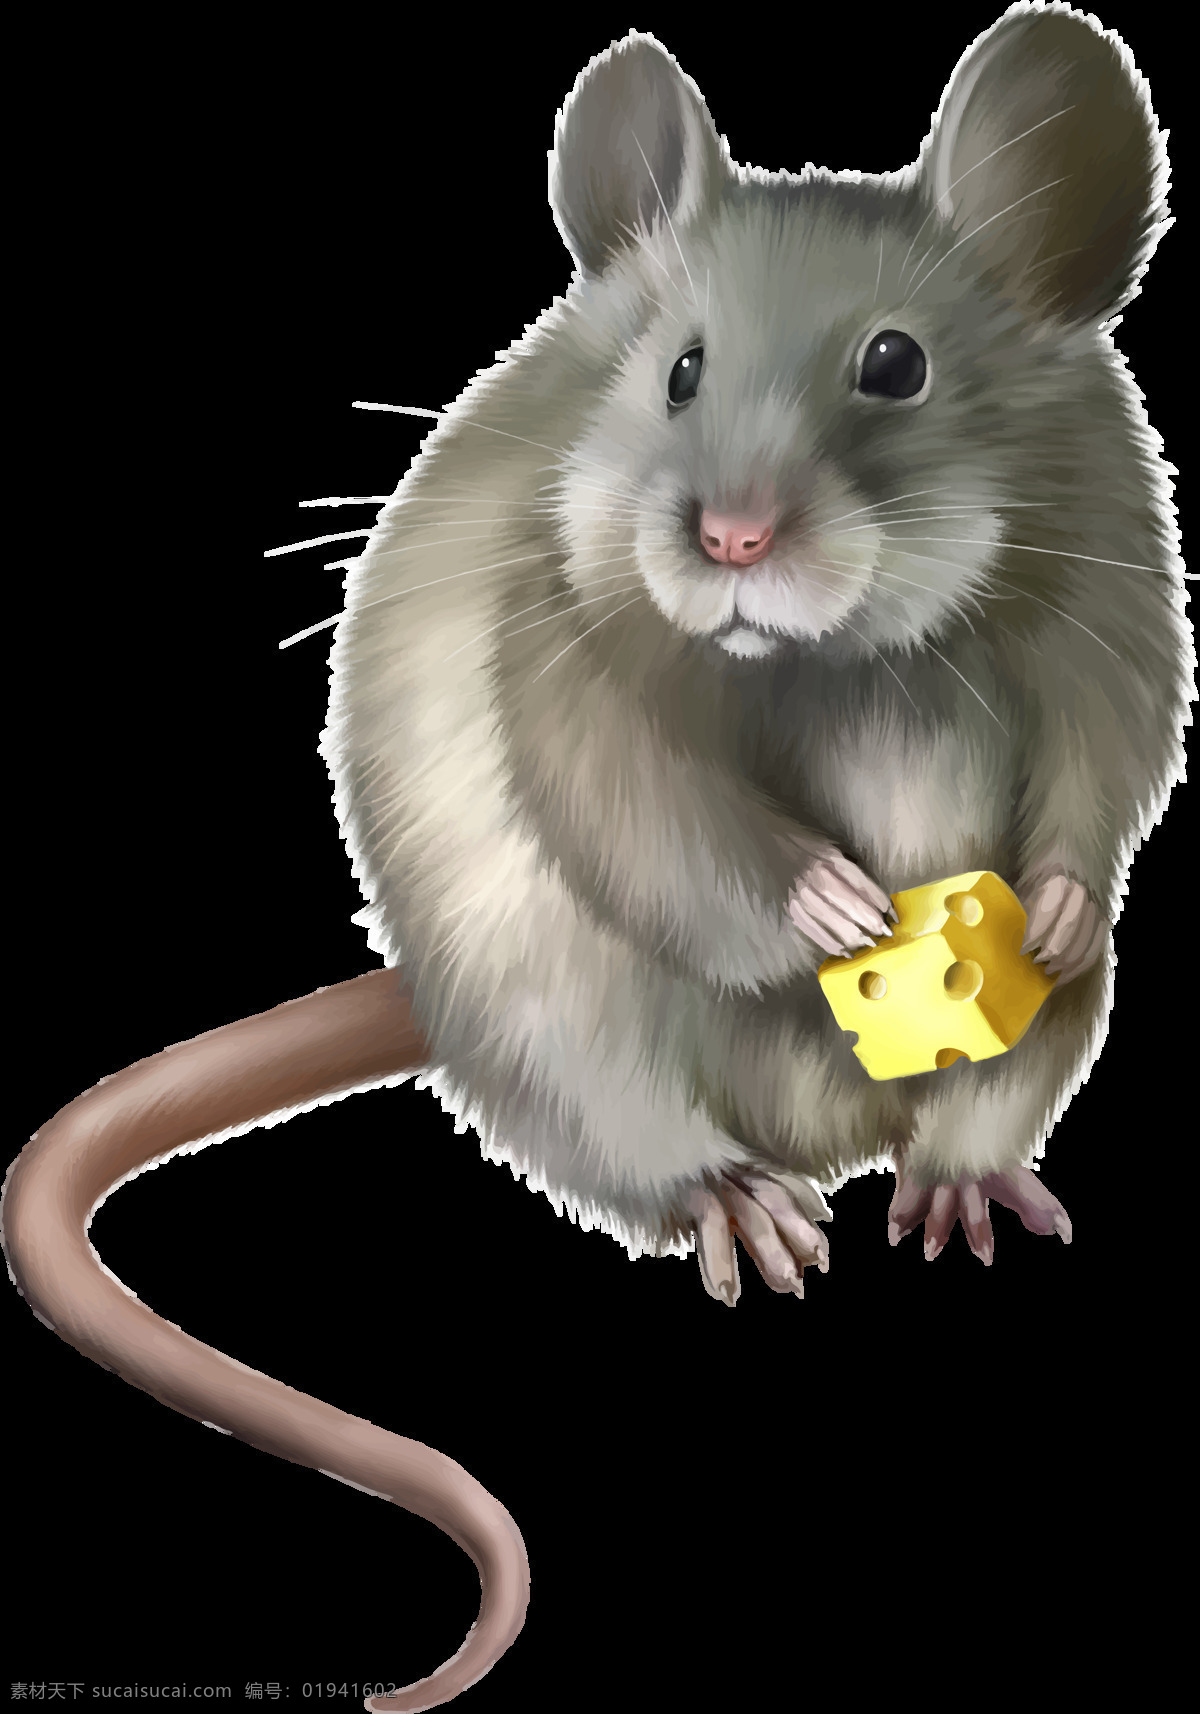 手绘 可爱 老鼠 免 抠 透明 图 层 老鼠卡通图片 日本 核辐射 变异 世界 上 最大 巨型 可爱老鼠 简 笔画 大全 老鼠简笔画 彩色老鼠图片 田鼠